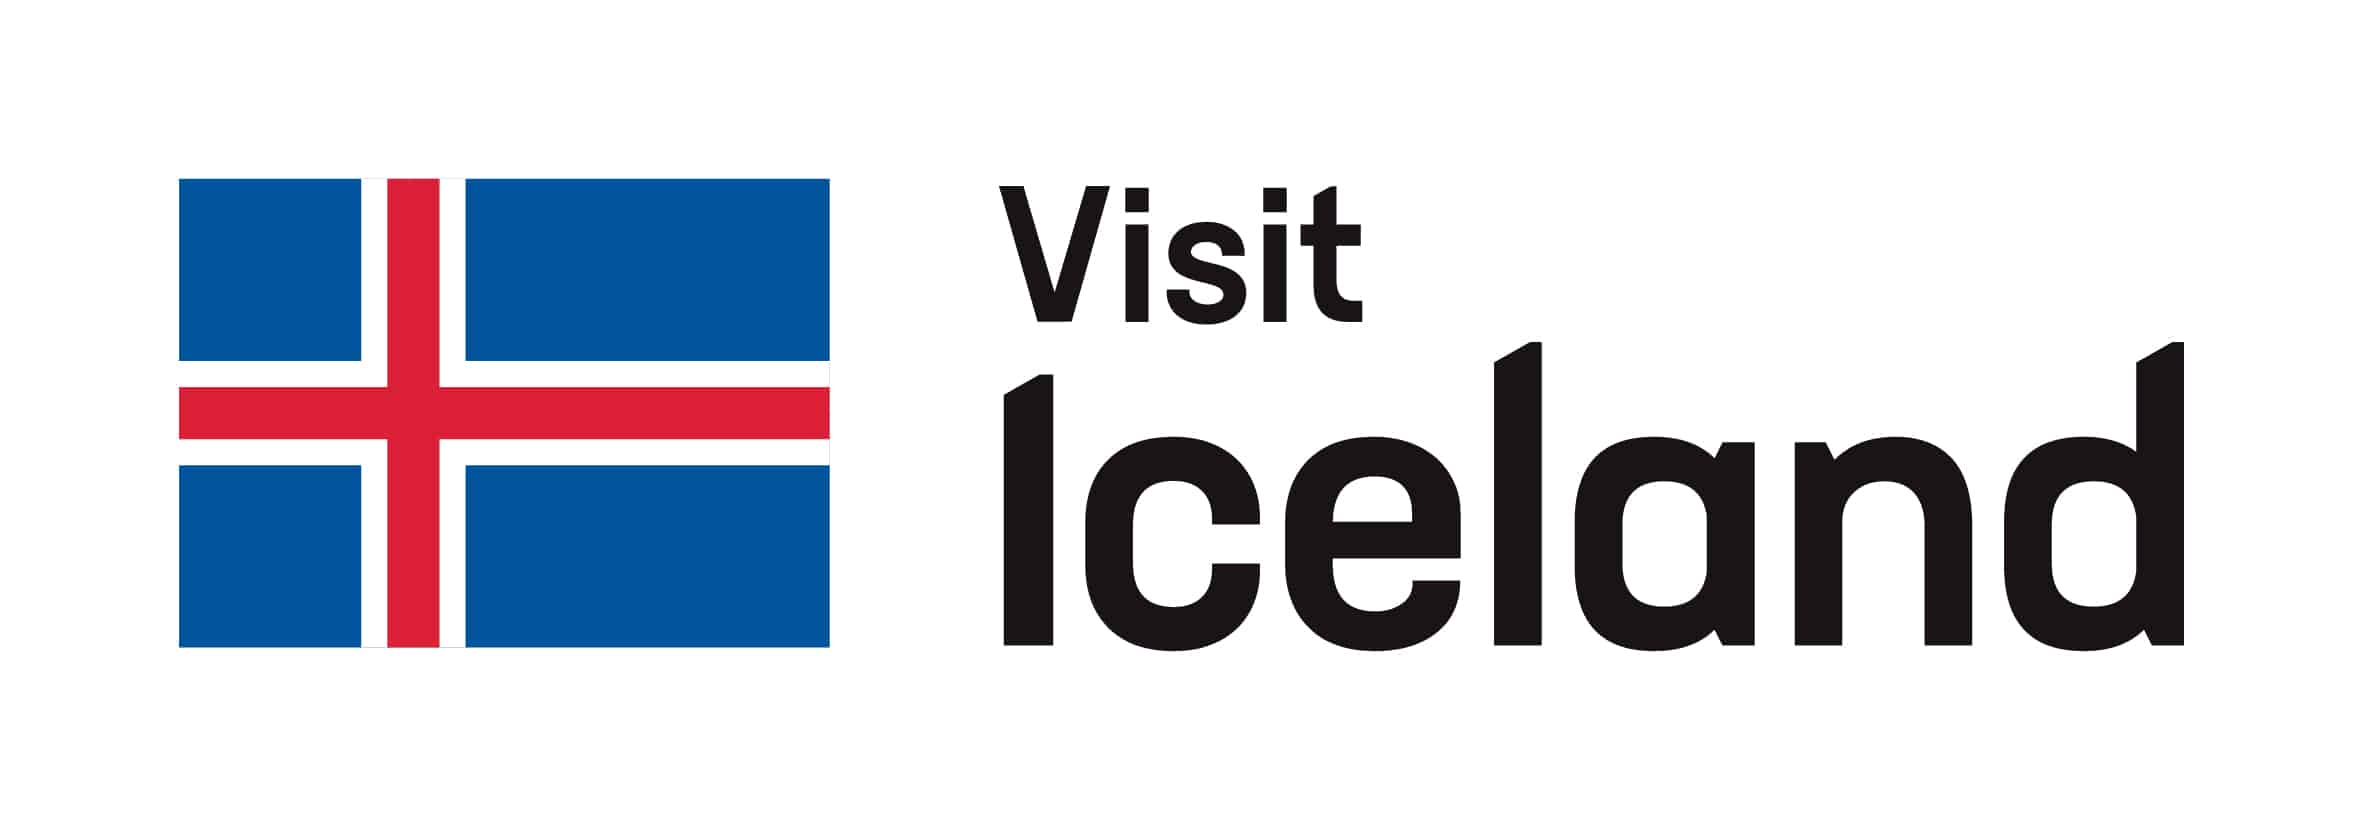 访问冰岛的案例封面